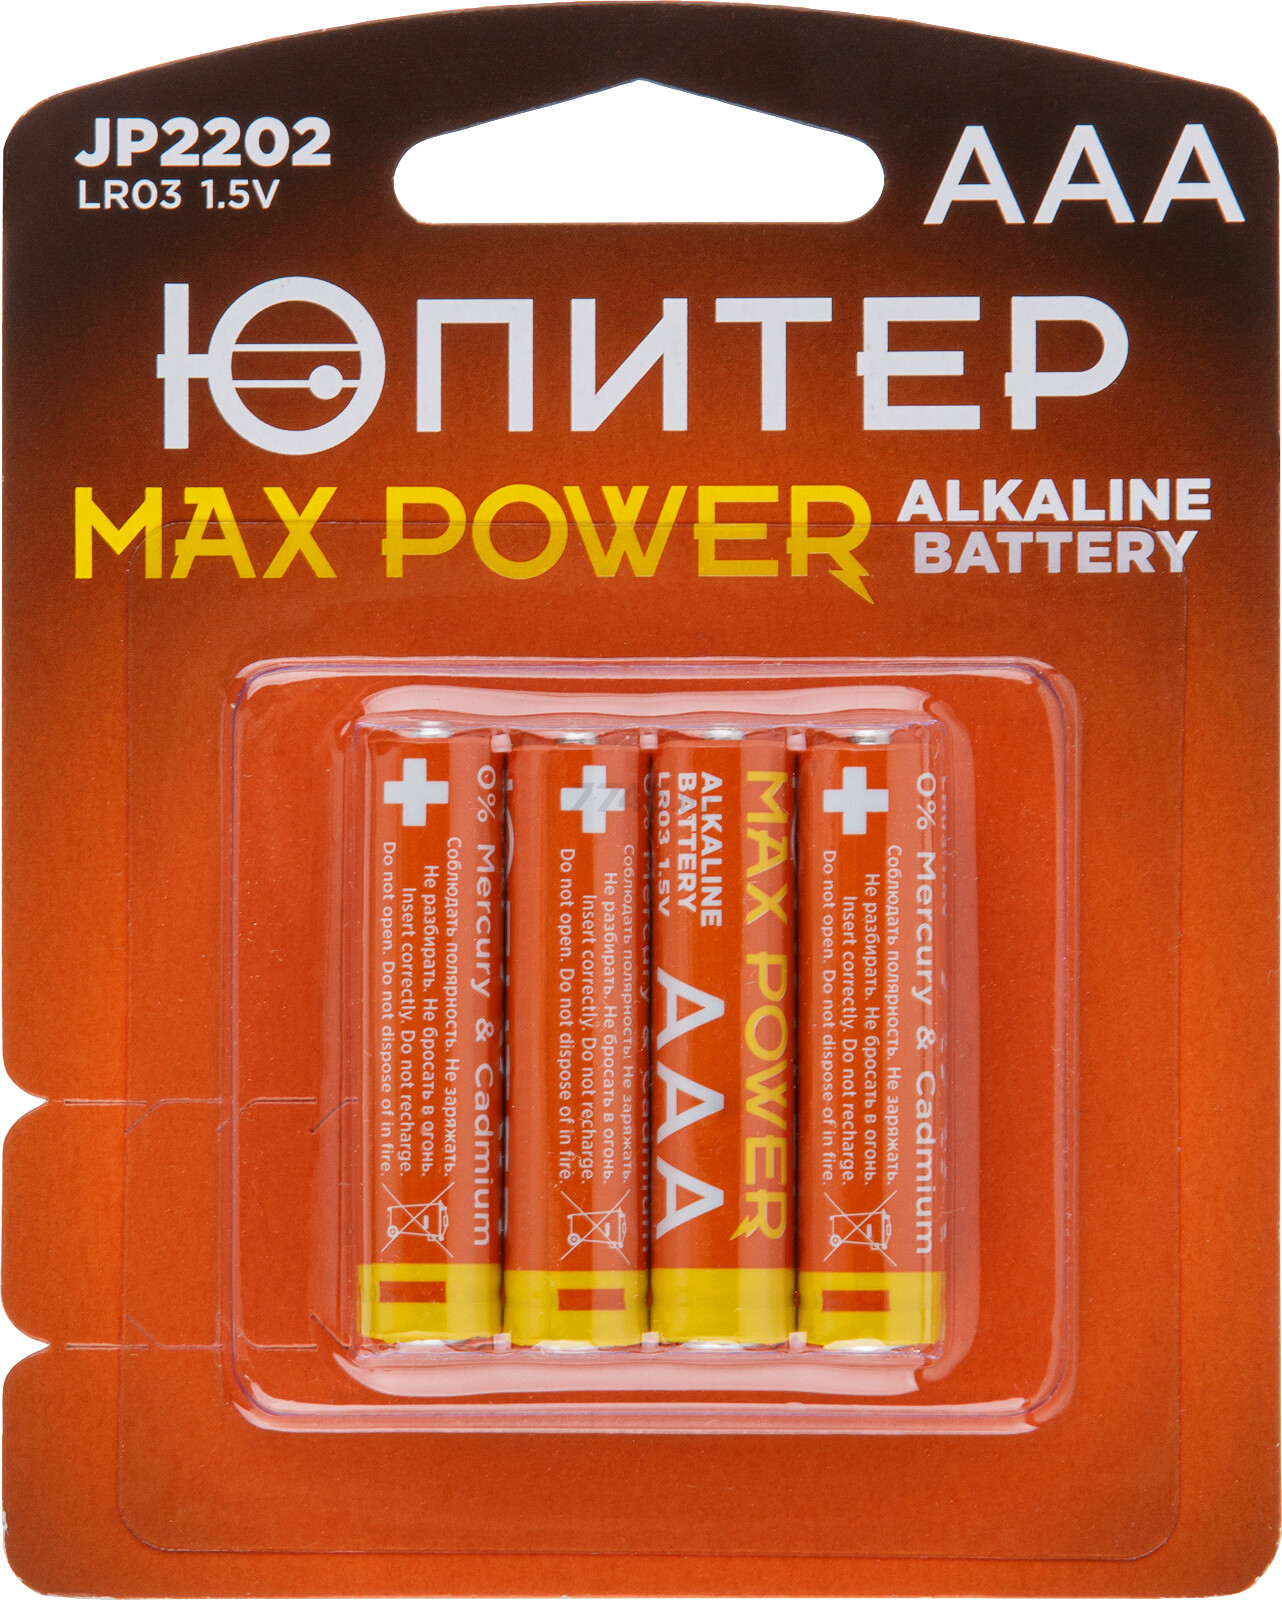 Батарейка ААА ЮПИТЕР Max Power 1,5 V алкалиновая 4 штуки (JP2202) купить в Минске — цены в интернет-магазине 7745.by